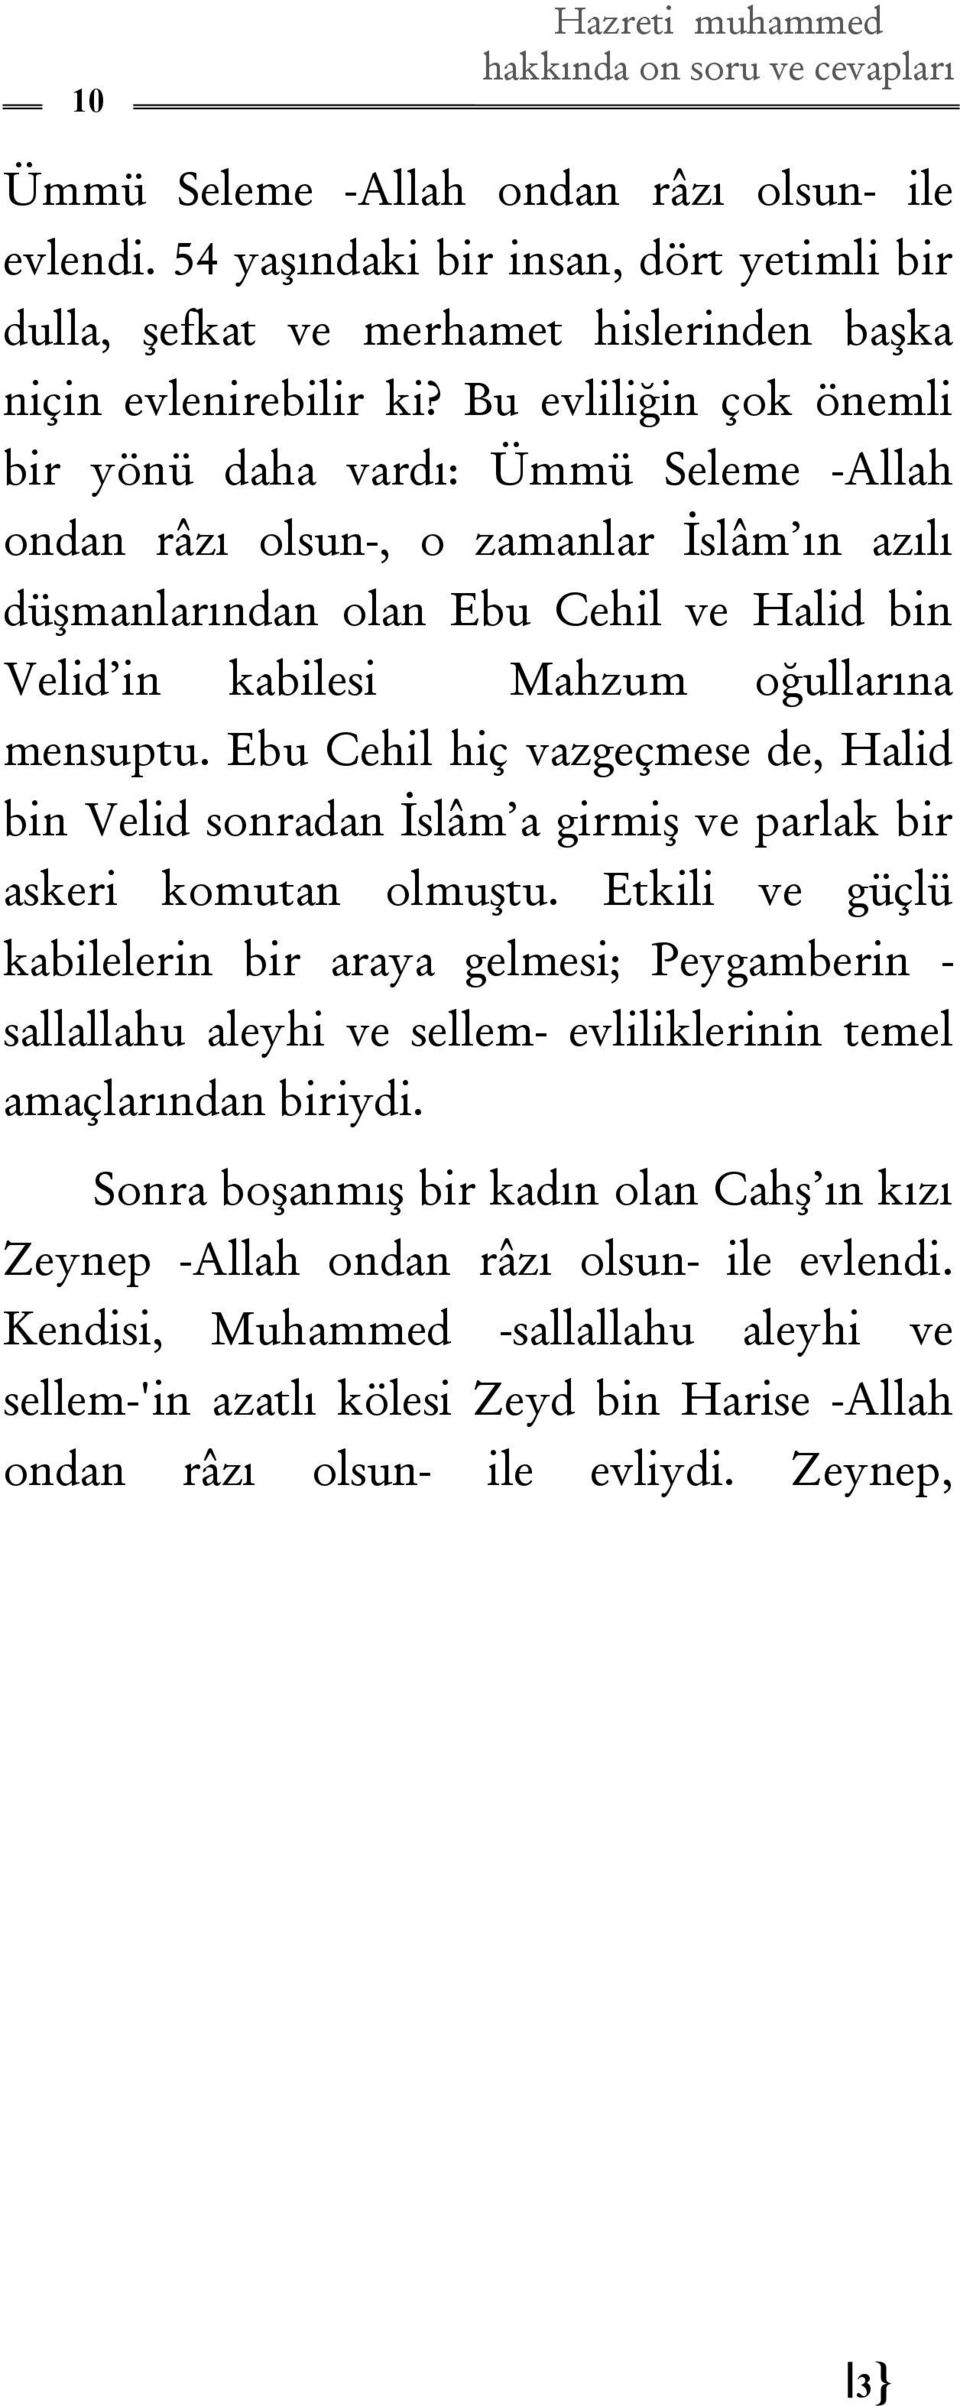 Ebu Cehil hiç vazgeçmese de, Halid bin Velid sonradan İslâm a girmiş ve parlak bir askeri komutan olmuştu.